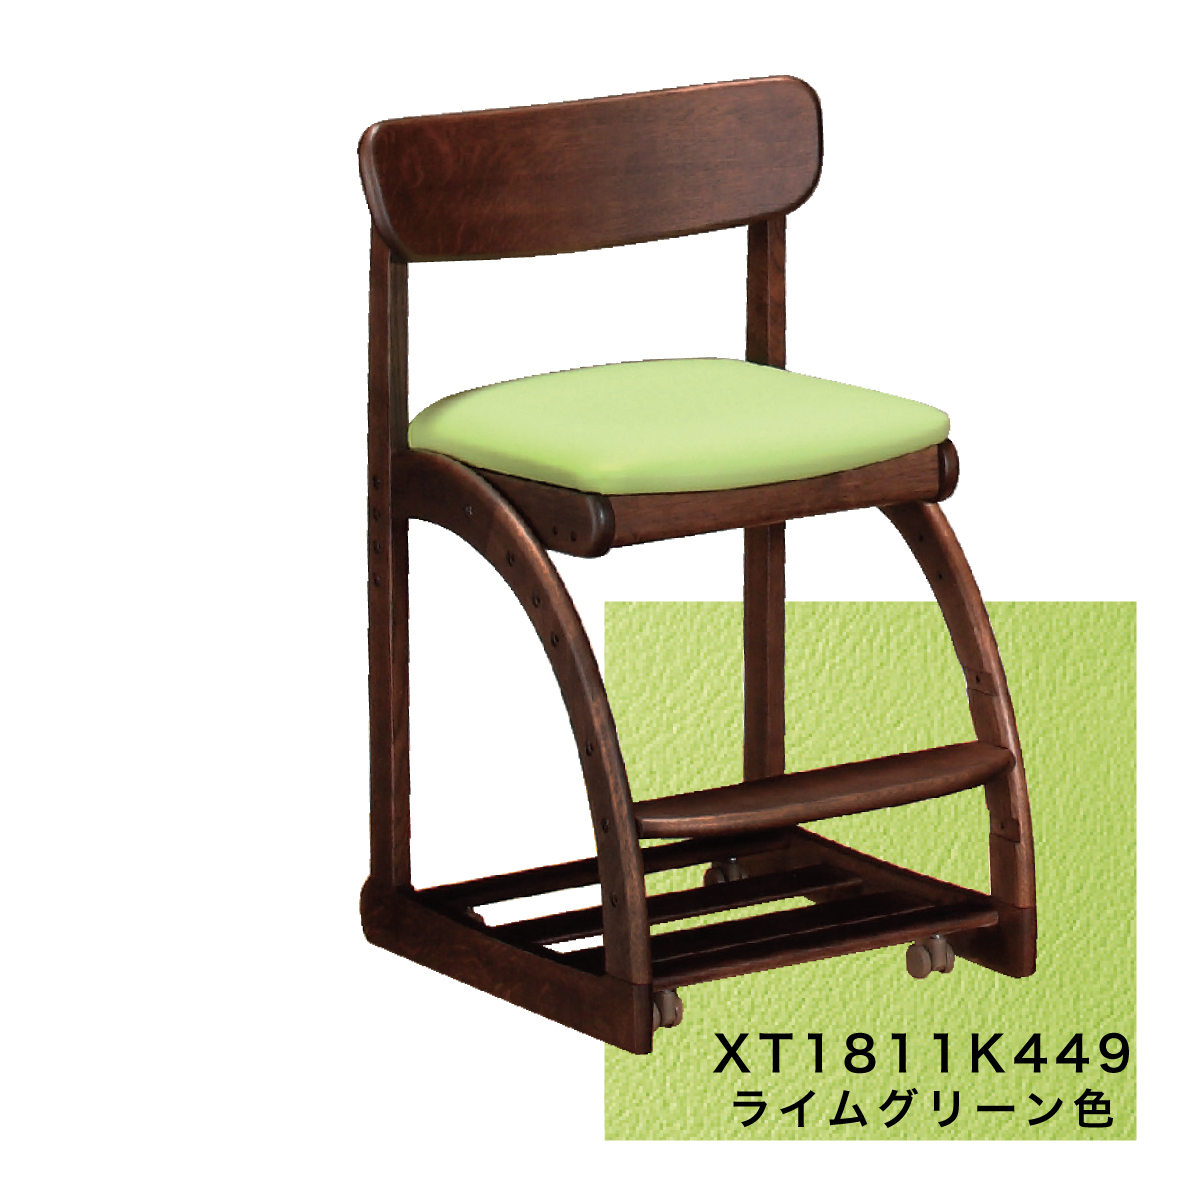 カリモク 学習椅子 木製 XT1811 モカブラウン色 デスクチェア 子供椅子 